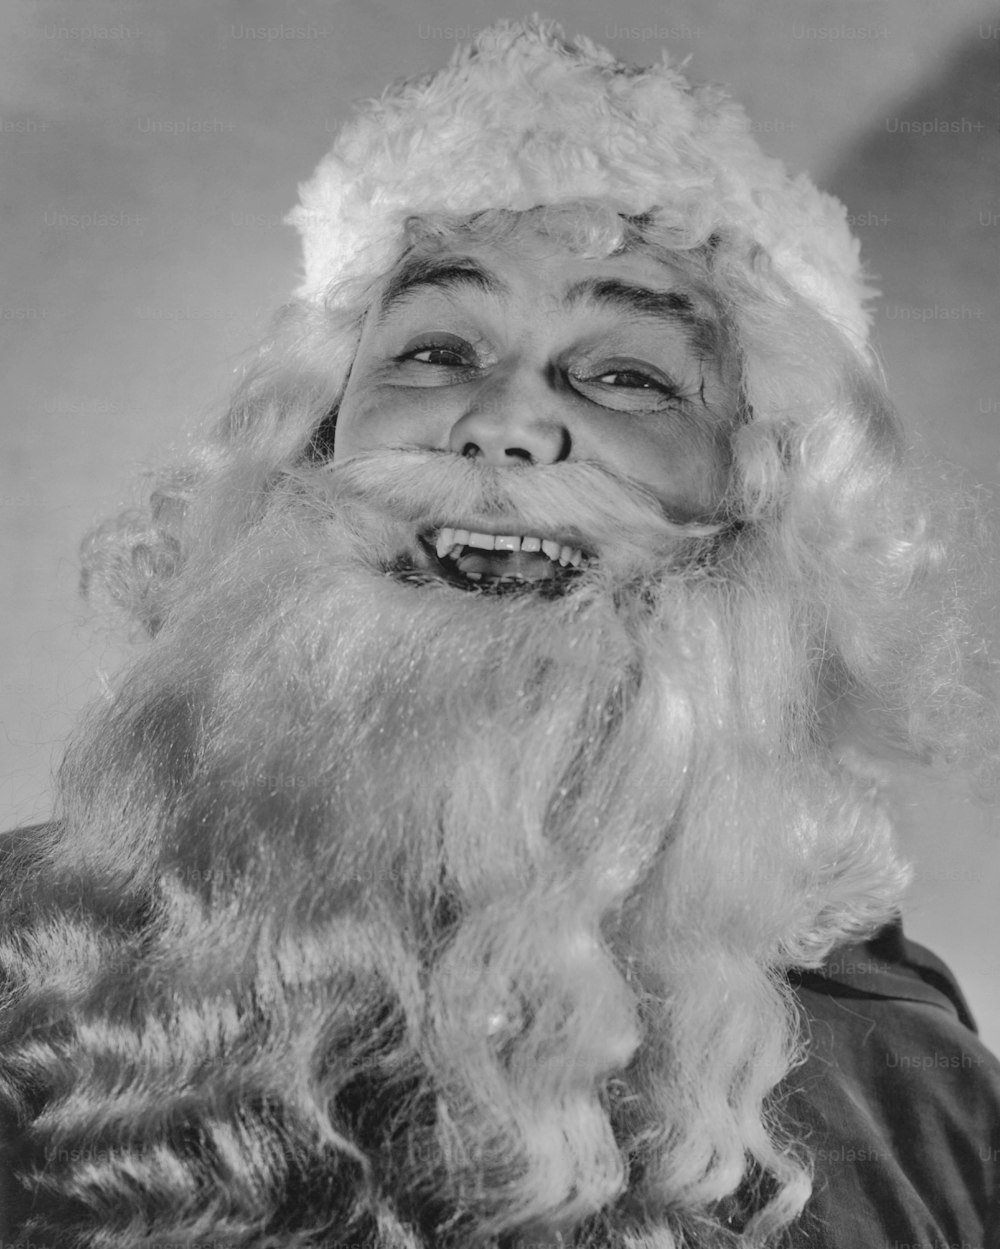 Papá Noel riendo en 1935. (Foto de Keystone View/FPG/Getty Images)